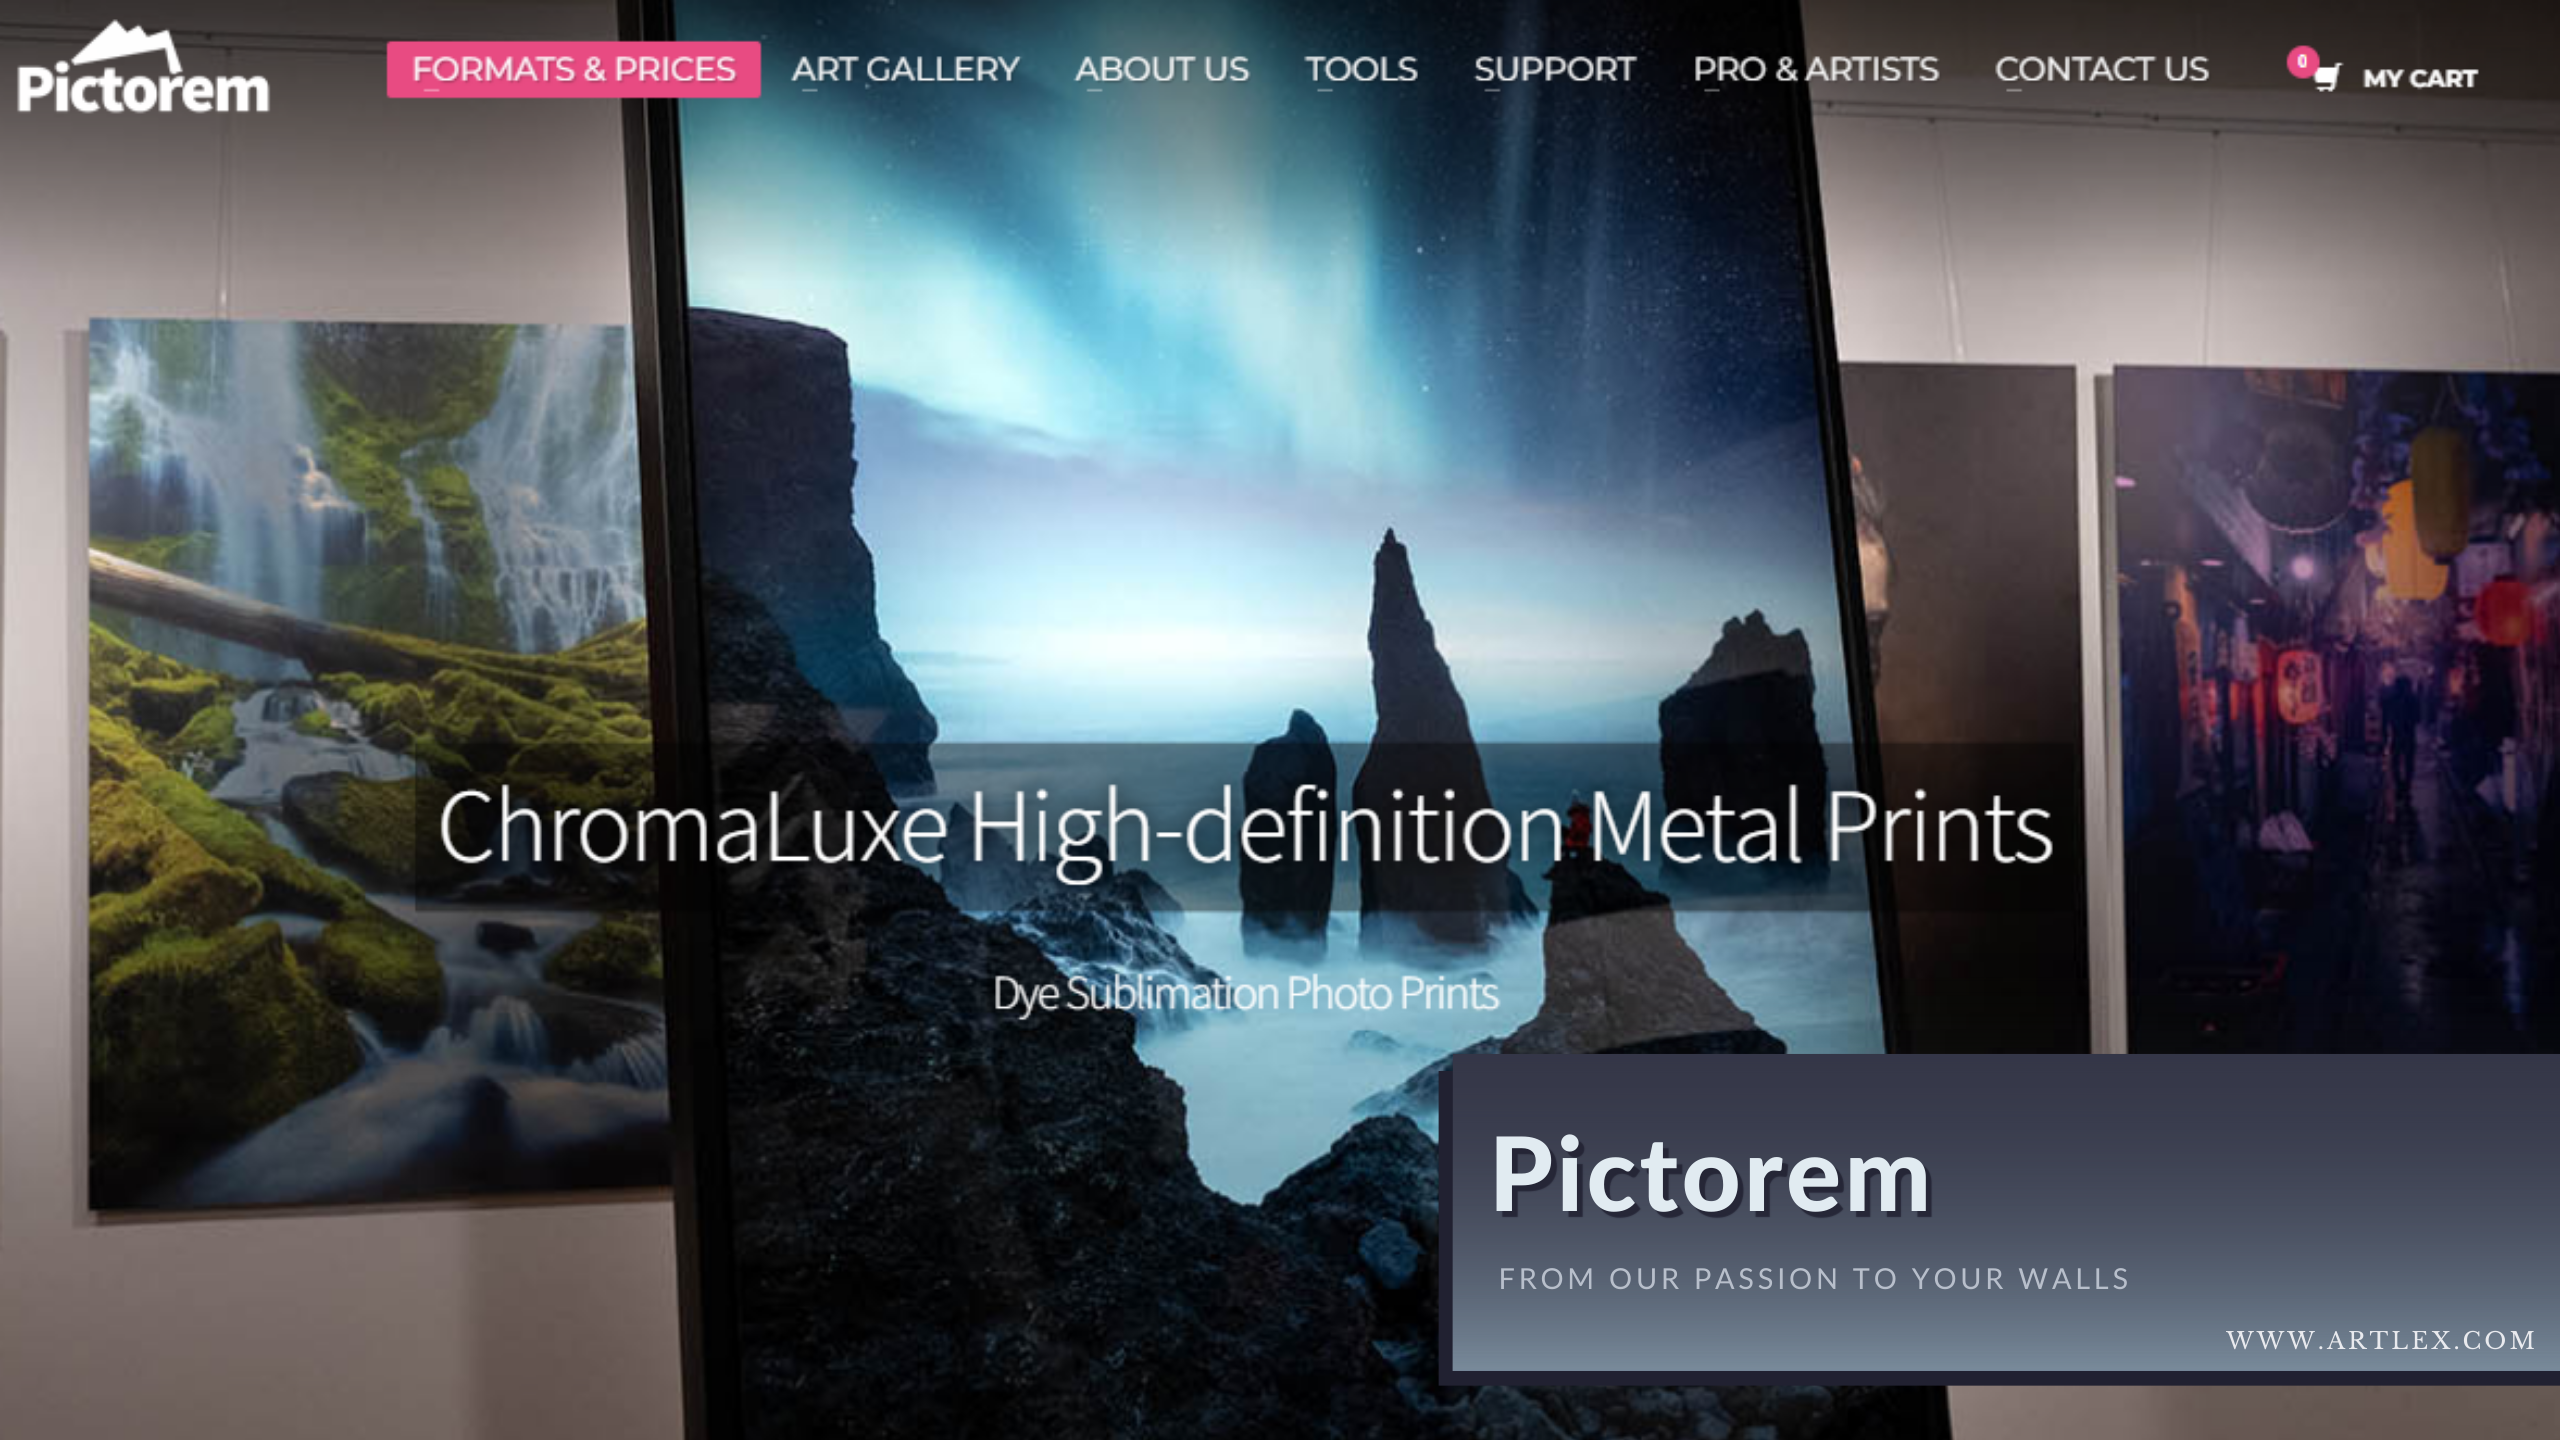 Pictorem Metal Prints